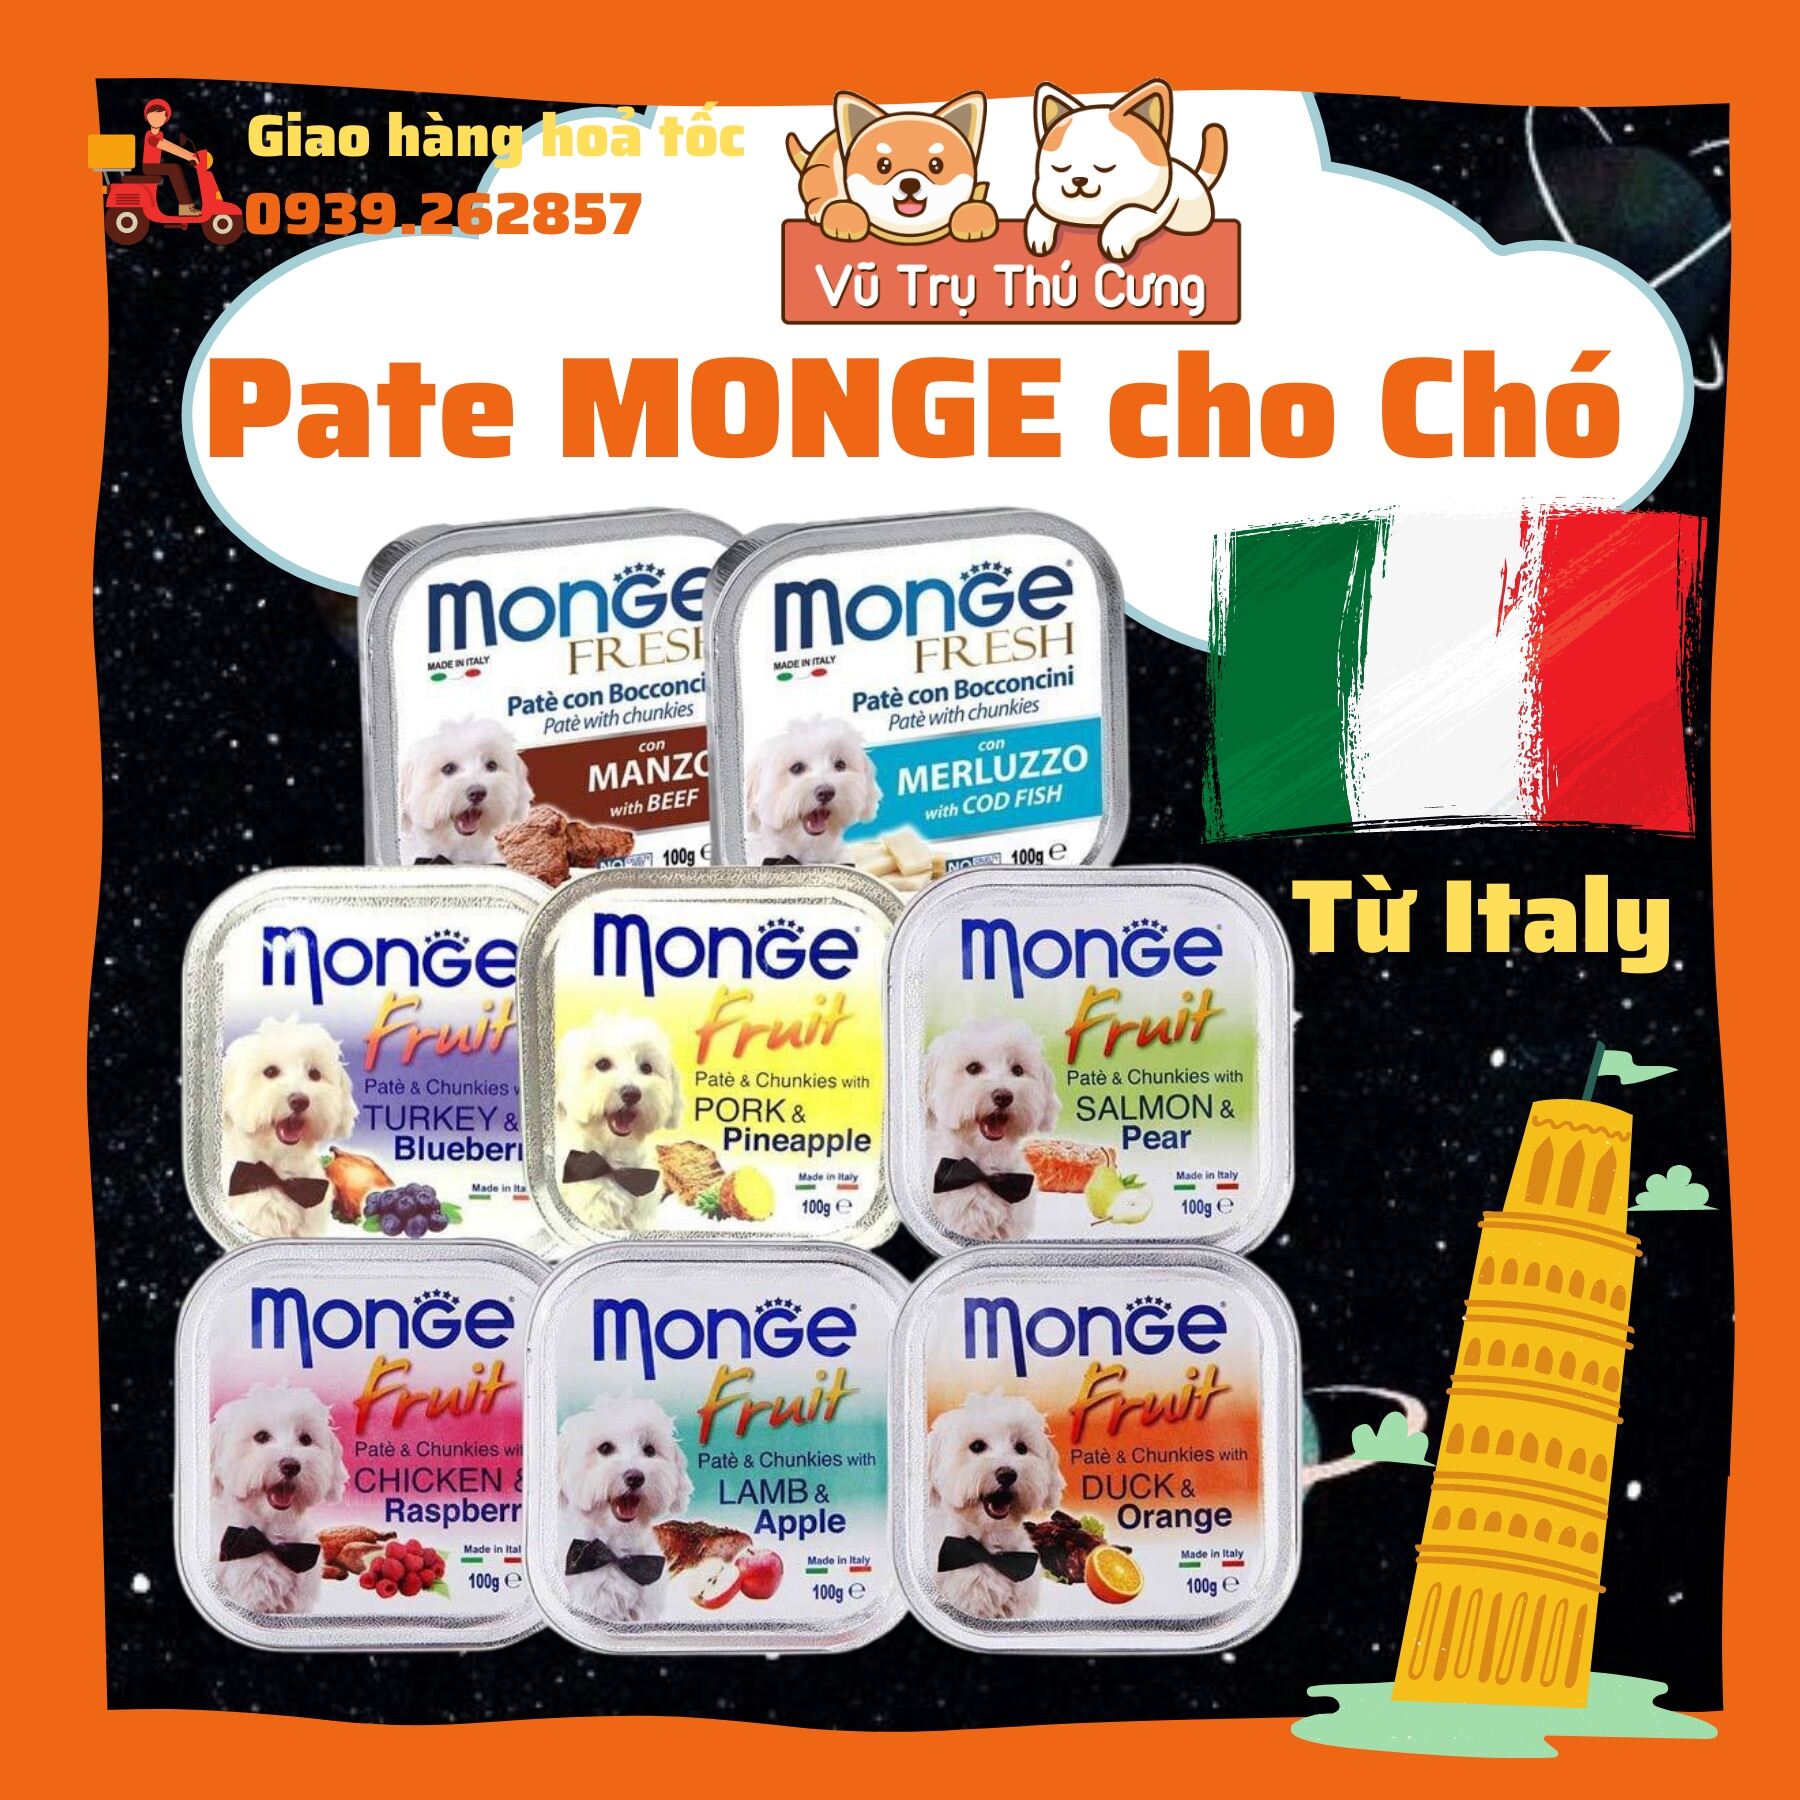 Pate Monge cho Chó của Italy, cung cấp chất xơ và Vitamin cho Chó hộp 100g